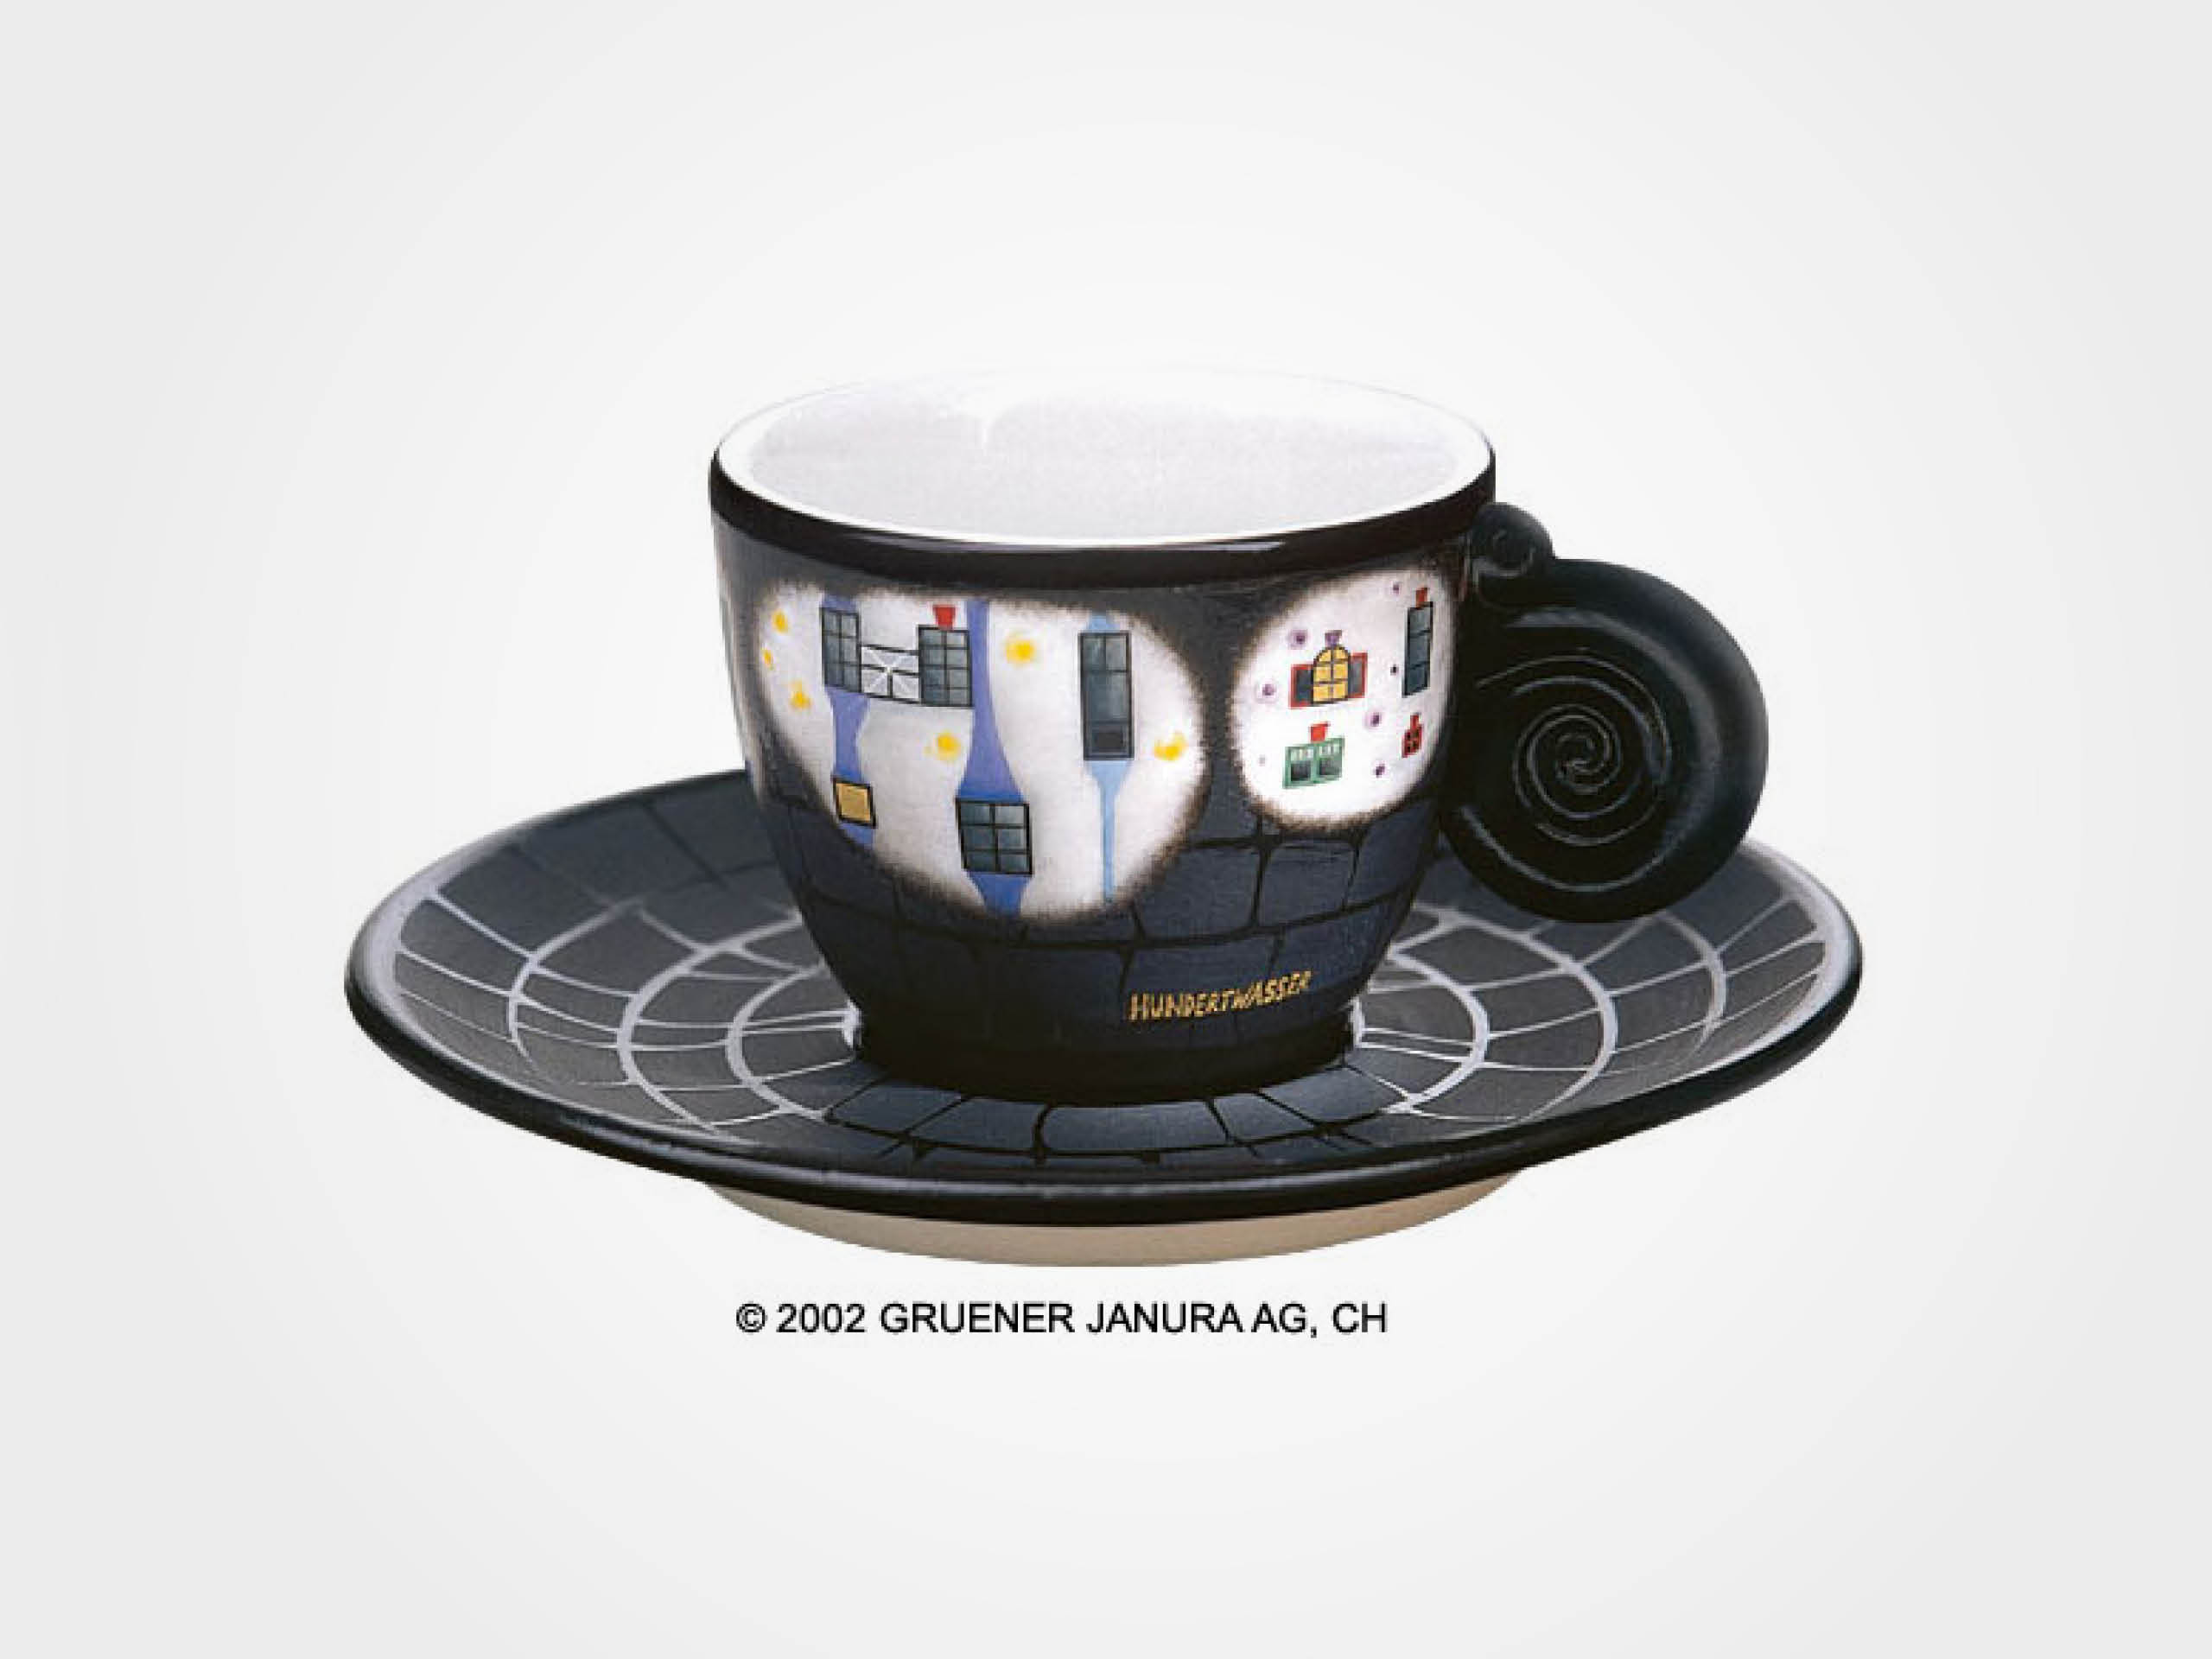 Friedensreich Hundertwasser: Espressotasse "In den Wiesen"